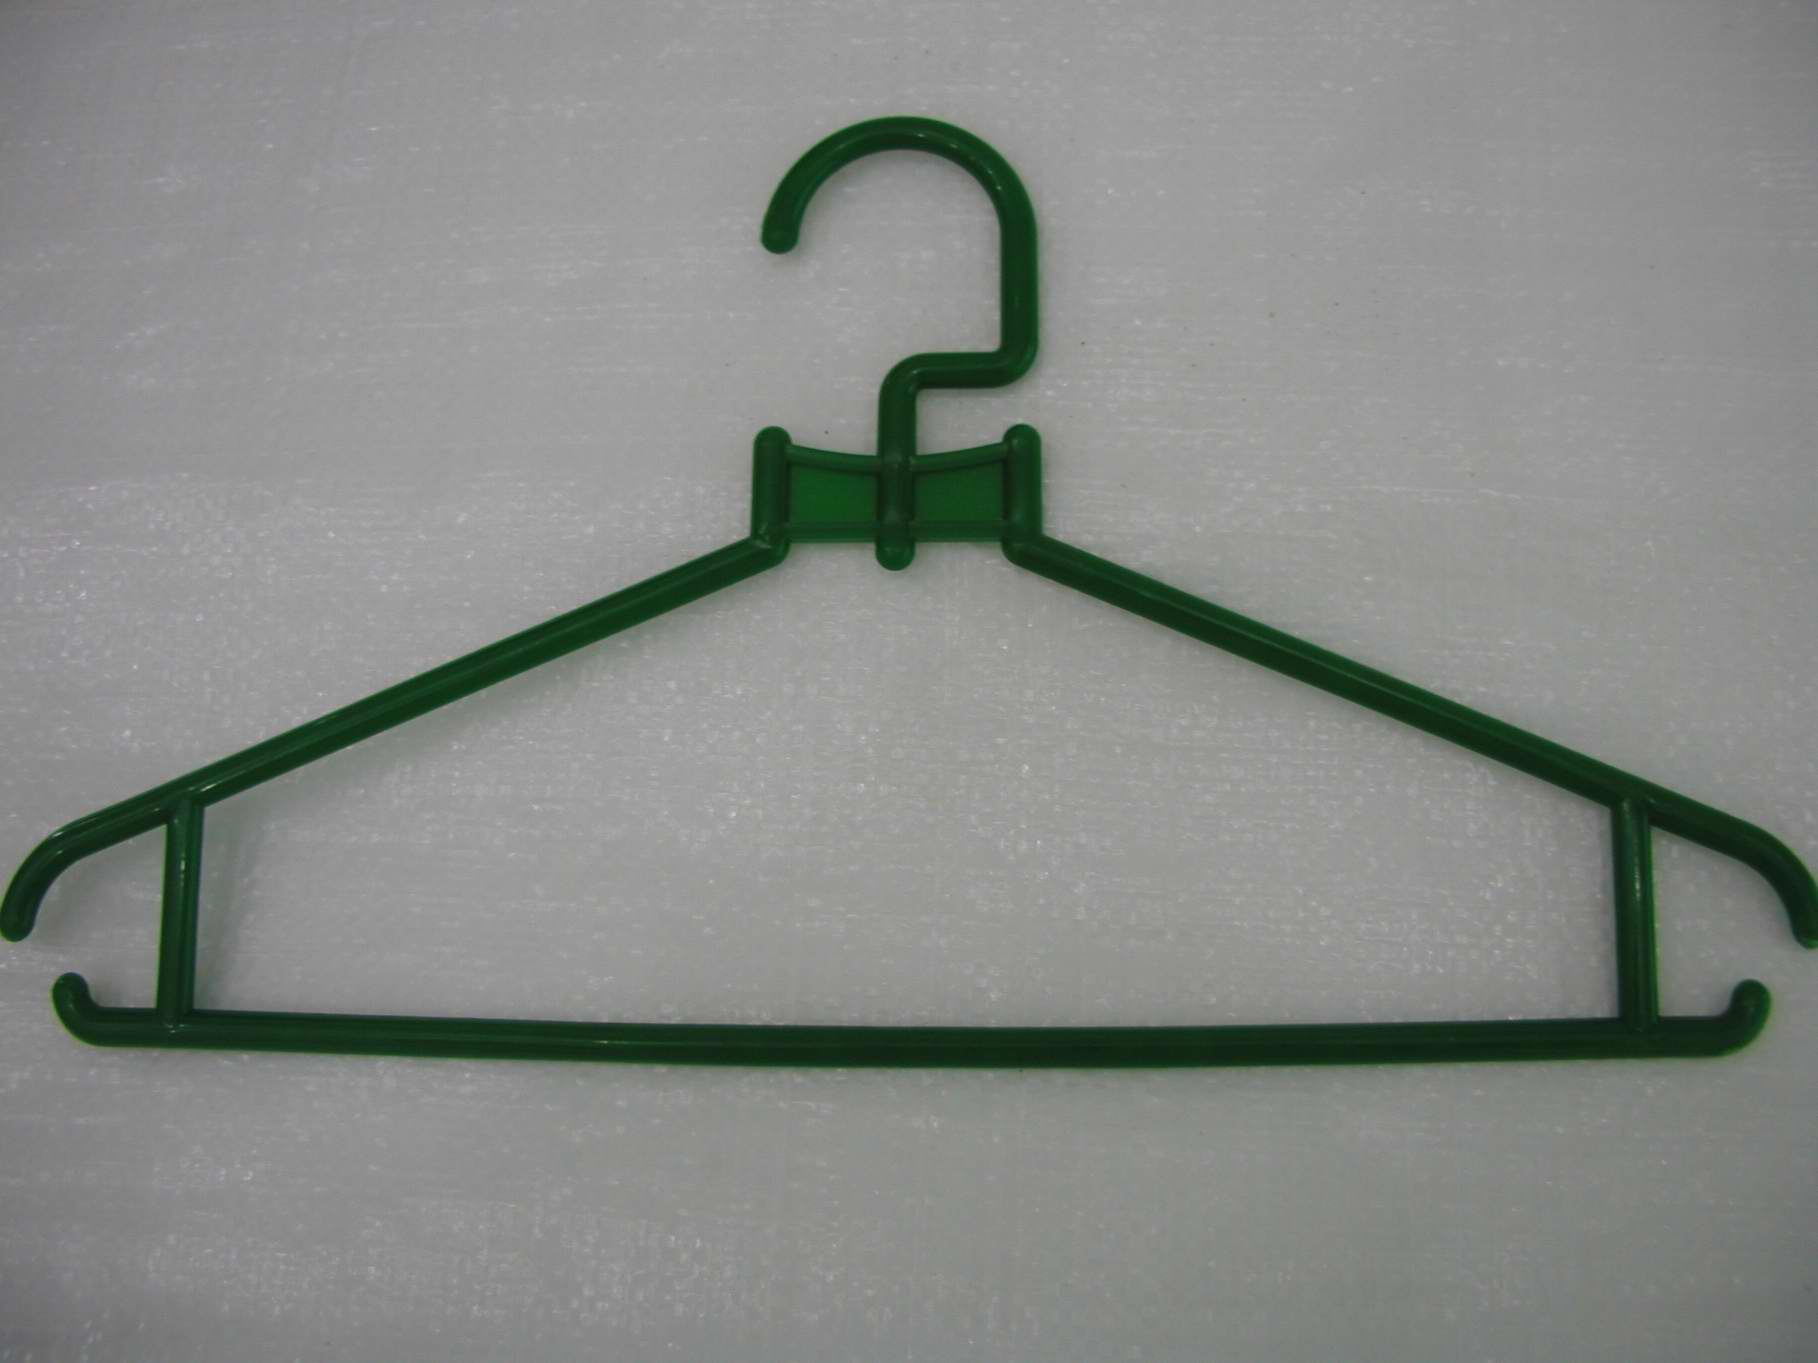  Plastic Hanger (Plastic Hanger)